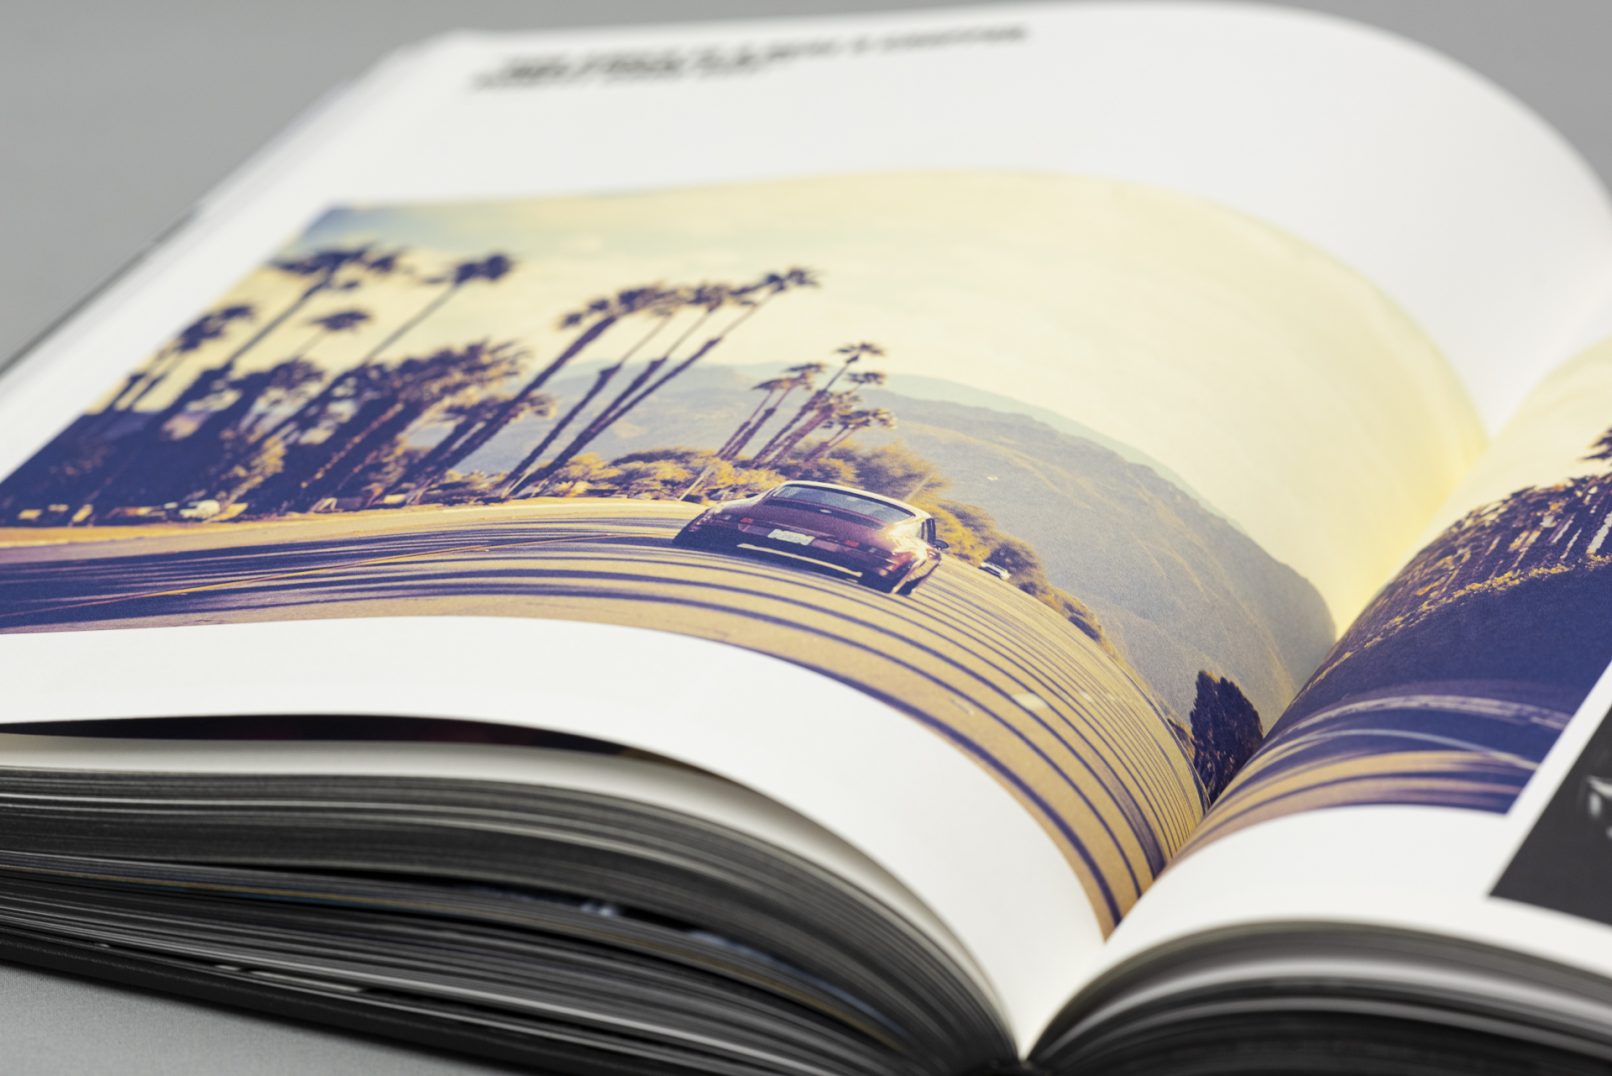 Detailaufnahme des Buchs Frank Kayser: R Gruppe, gezeigt wird ein Porsche auf einem Highway in Kalifornien